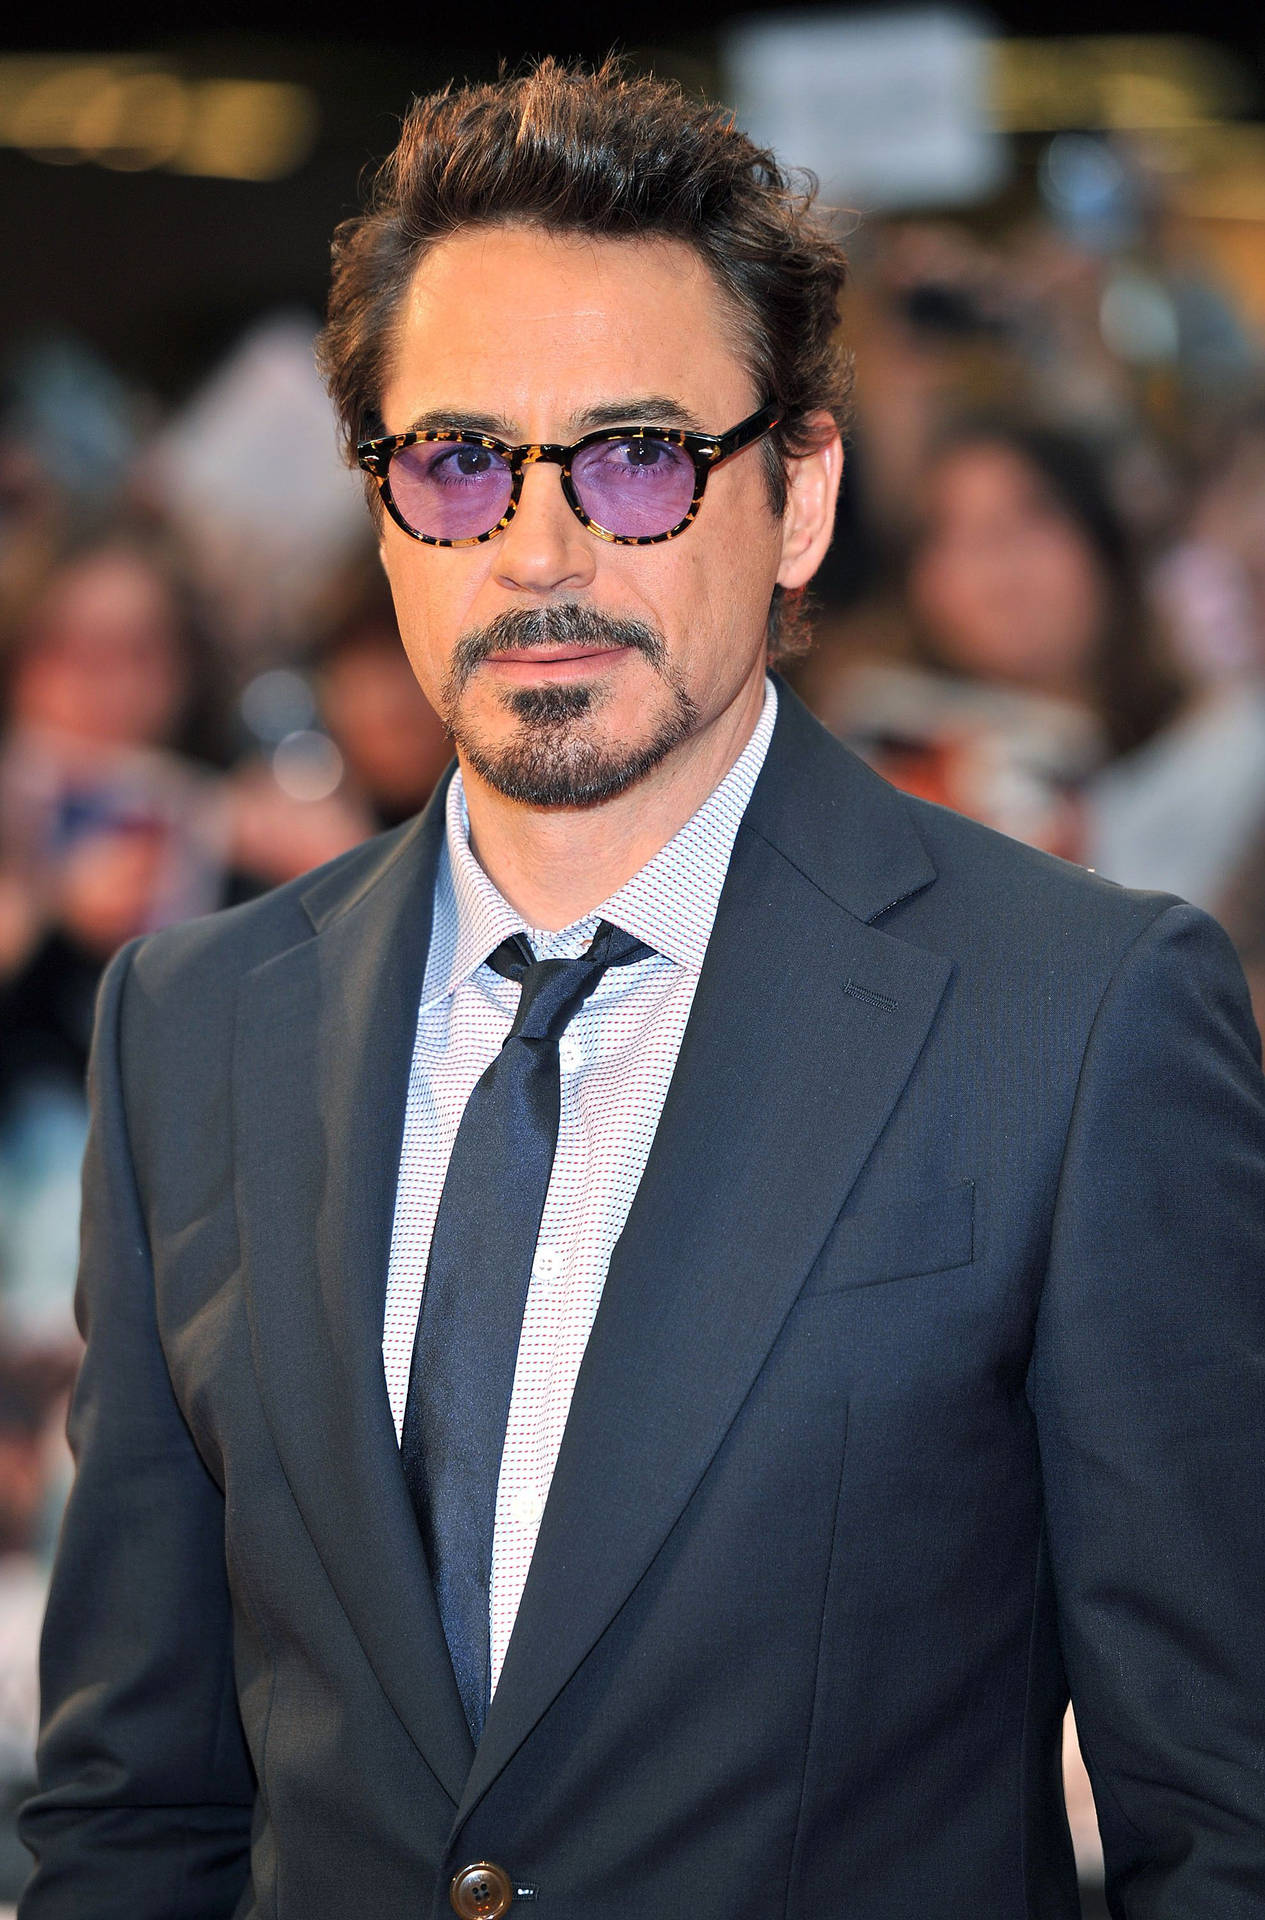 Download Latest HD Wallpapers of , Celebrities, Robert Downey Jr.